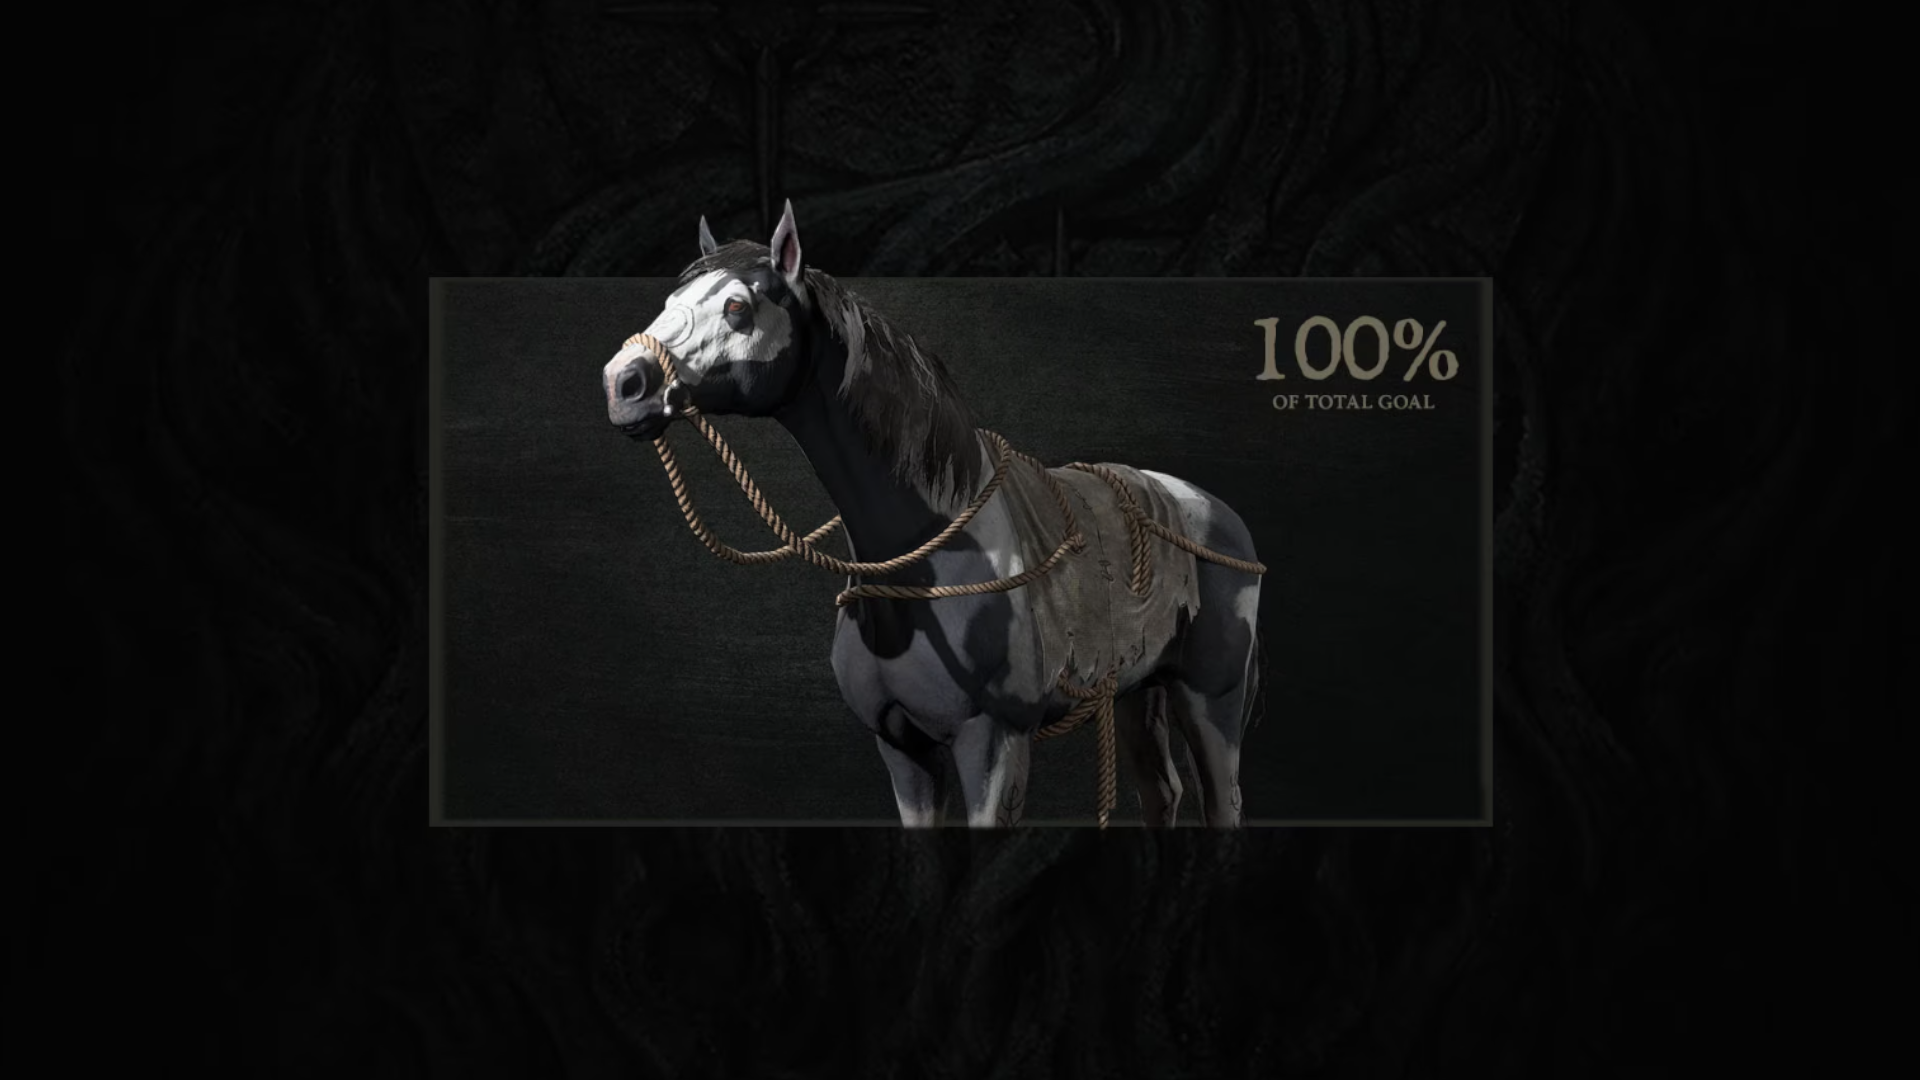 Une image d'un cheval aux yeux rouges de Diablo 4, une récompense pour avoir atteint 100 % d'un objectif de don lors de la récente collecte de sang du jeu.